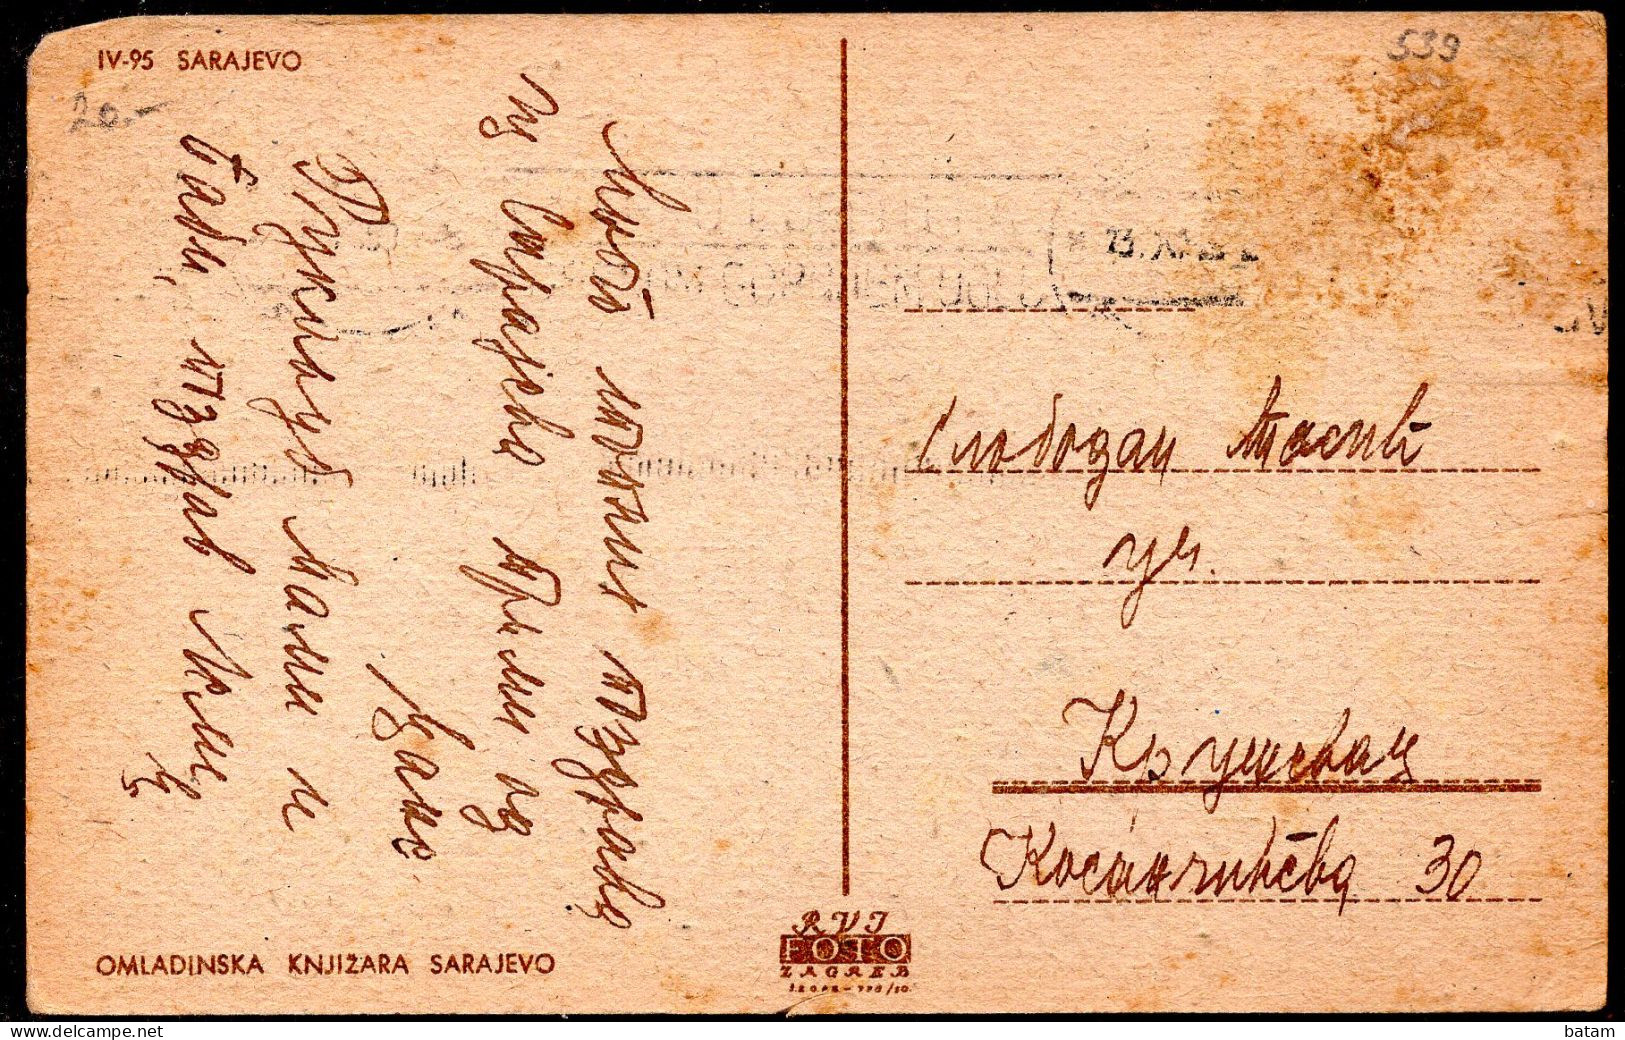 539 - Bosnia And Herzegovina - Sarajevo 1938 - Postcard - Bosnia Erzegovina